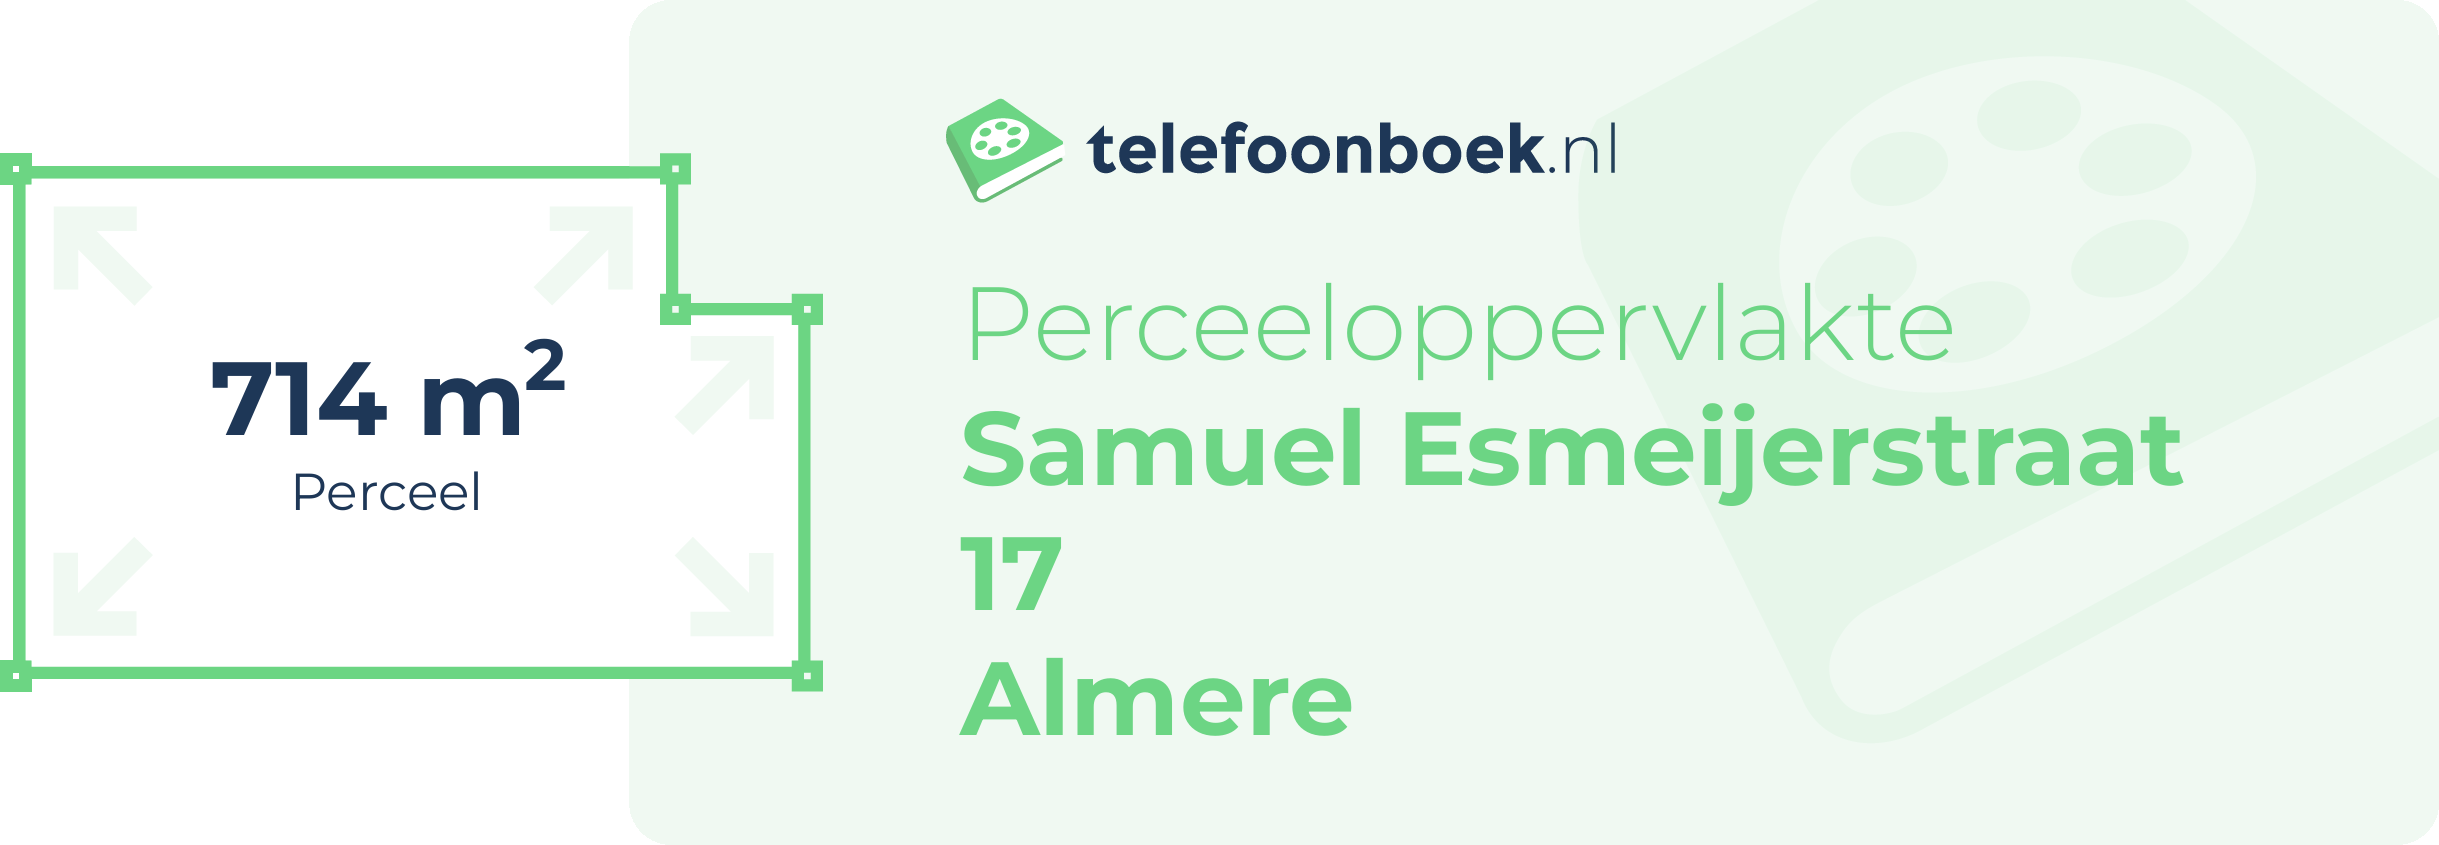 Perceeloppervlakte Samuel Esmeijerstraat 17 Almere